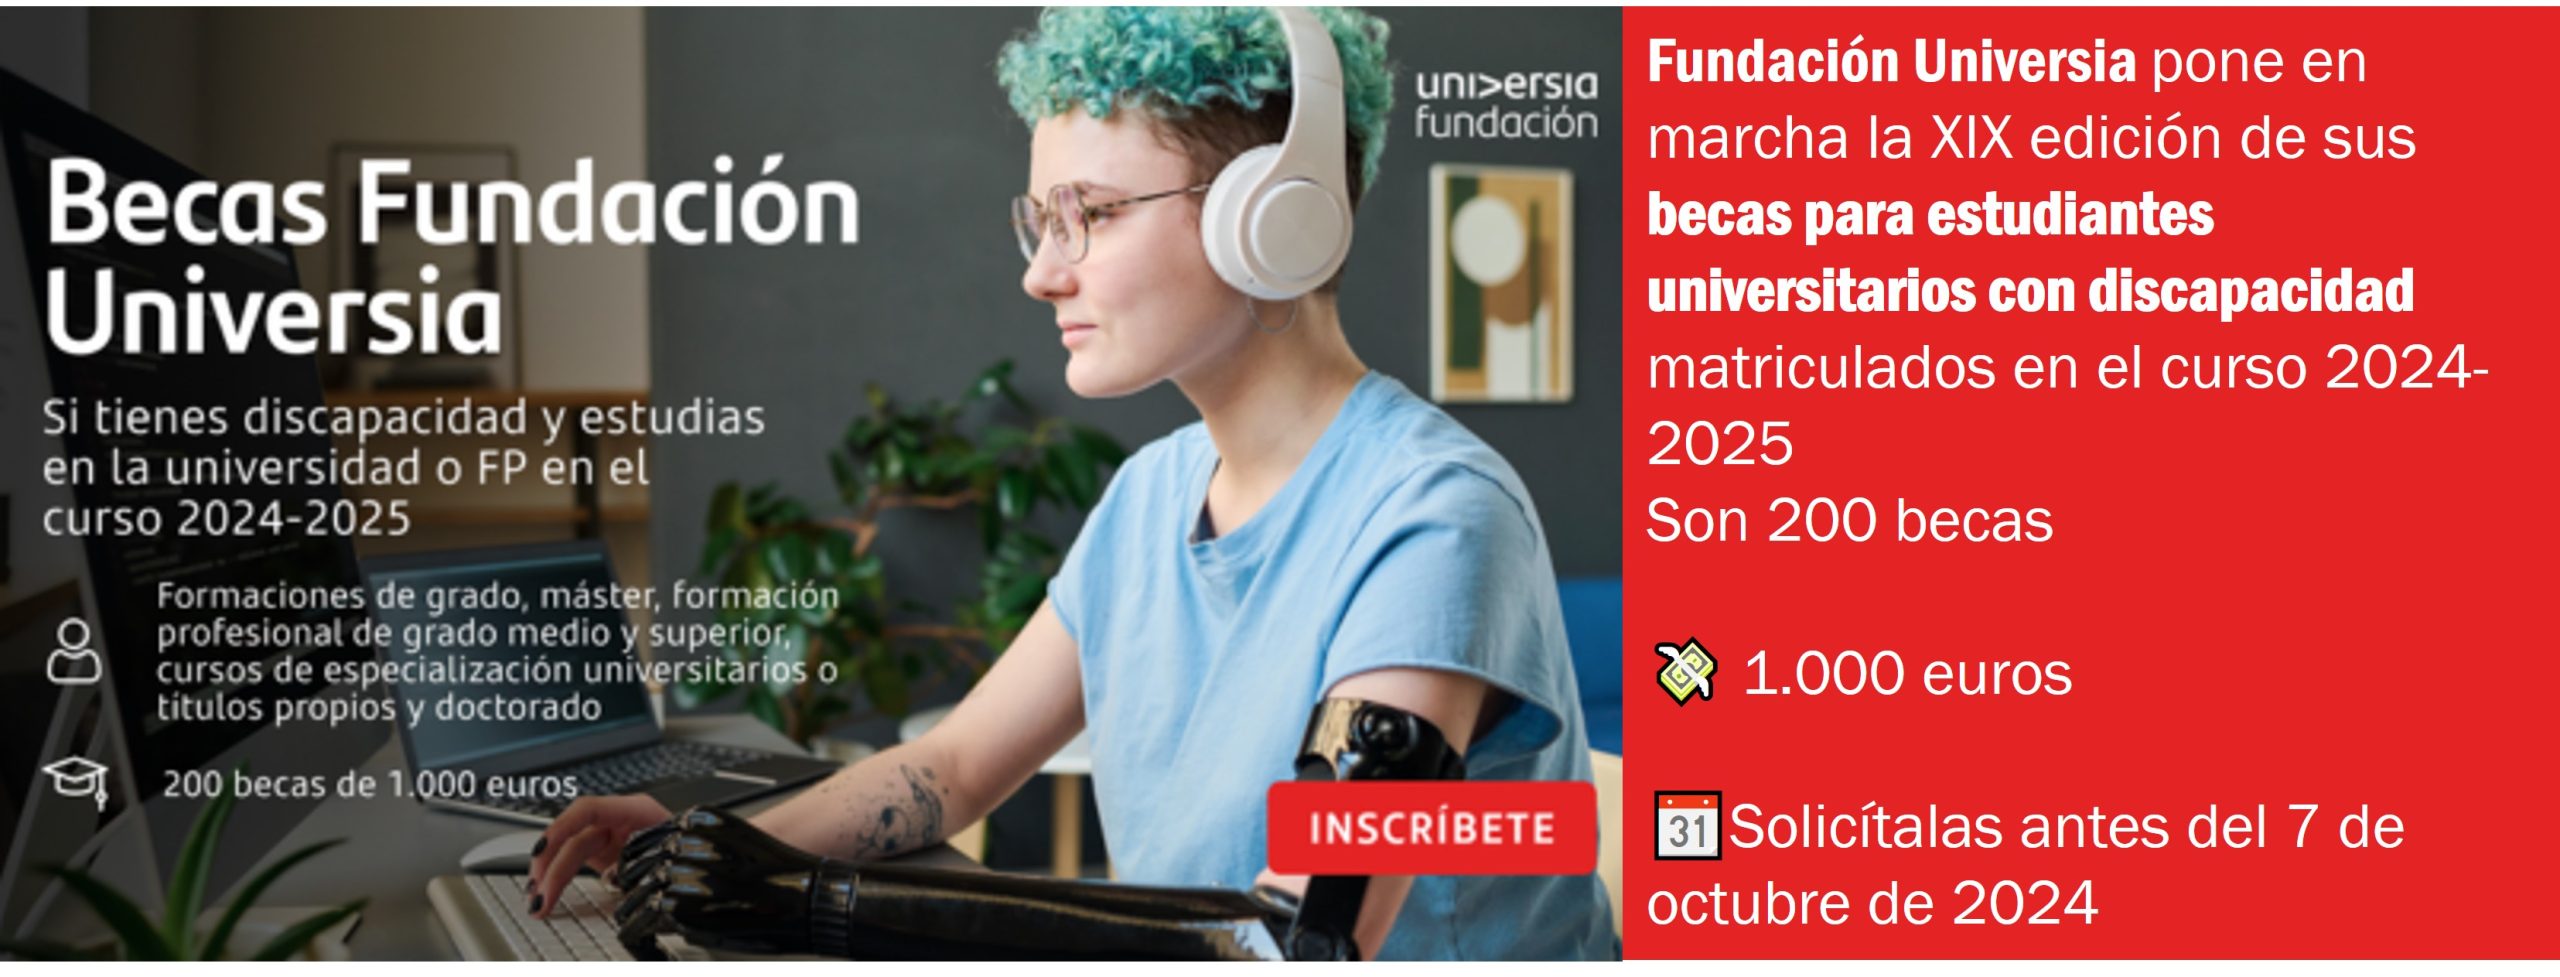 XIX edición de las becas para estudiantes universitarios con discapacidad de Fundación Universia. Curso 2024-2025